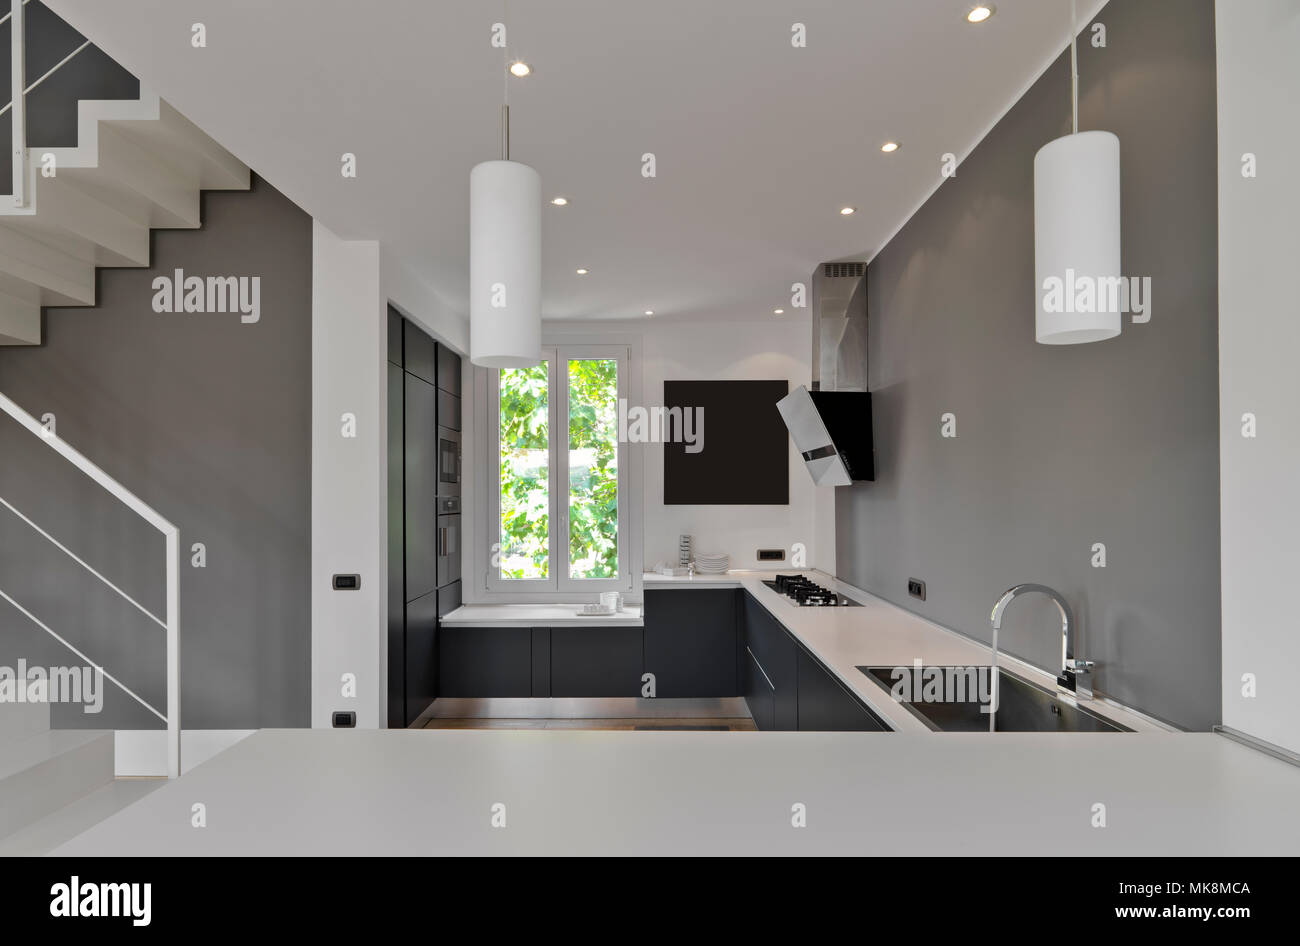 Interieur Aufnahmen von einer modernen Küche im Vordergrund der integrierten Waschbecken mit Wasserhahn Stockfoto